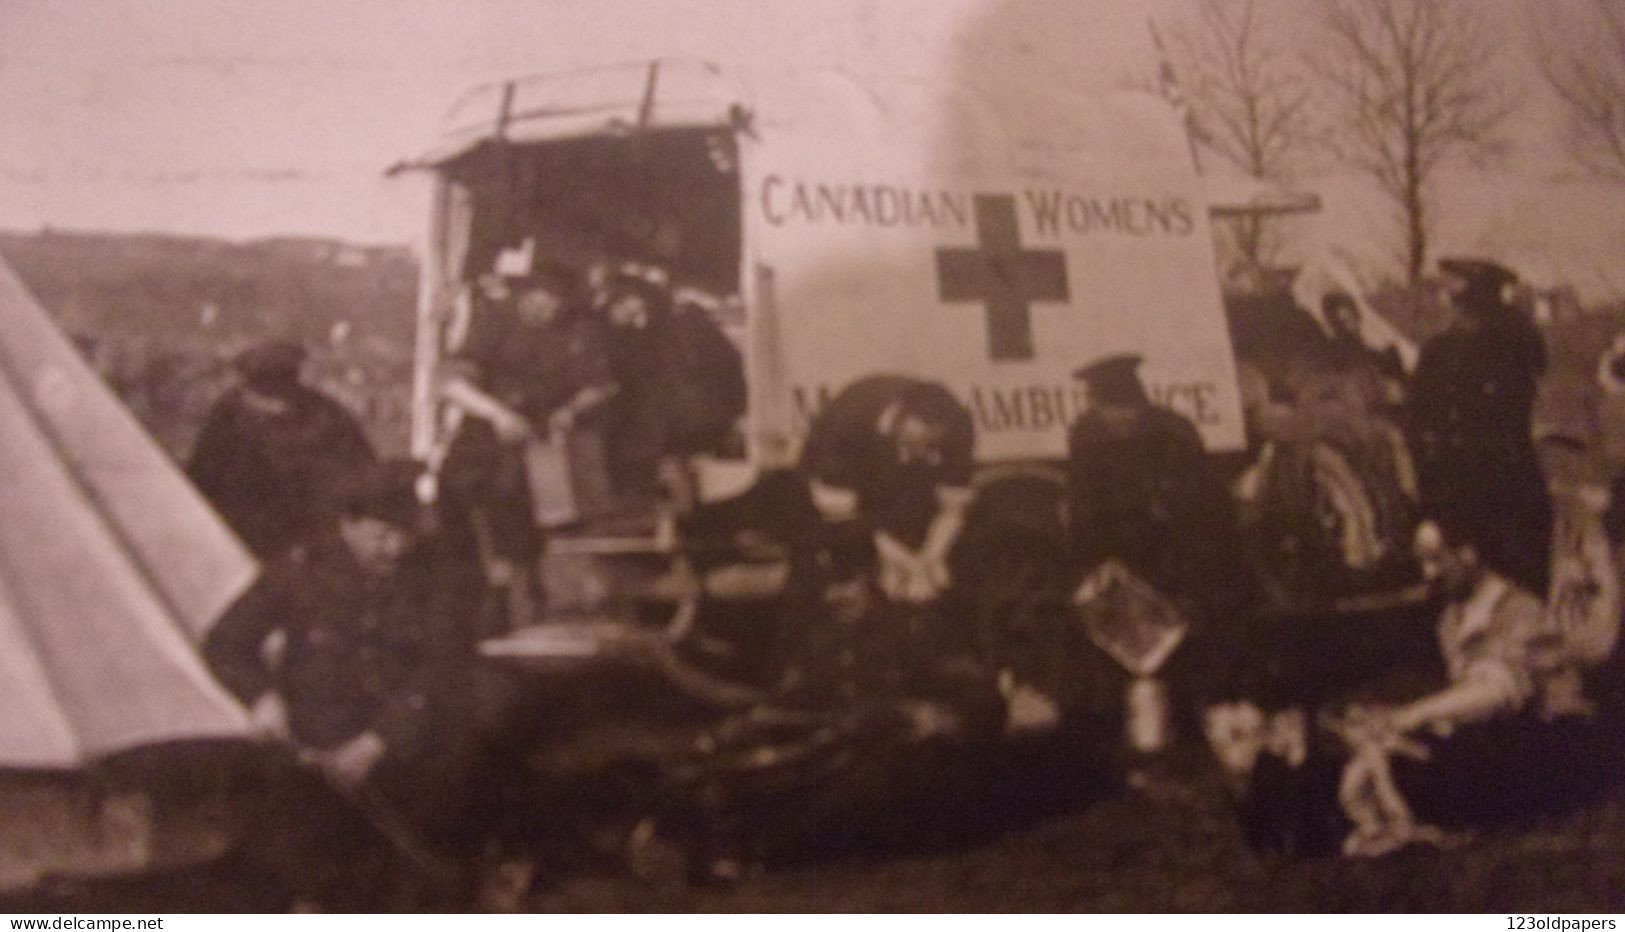 Santé - Guerre 1914 - Ambulance De La Croix Rouge Canadienne - Canadian Red Cross In France (Canadian Women's) - Croce Rossa